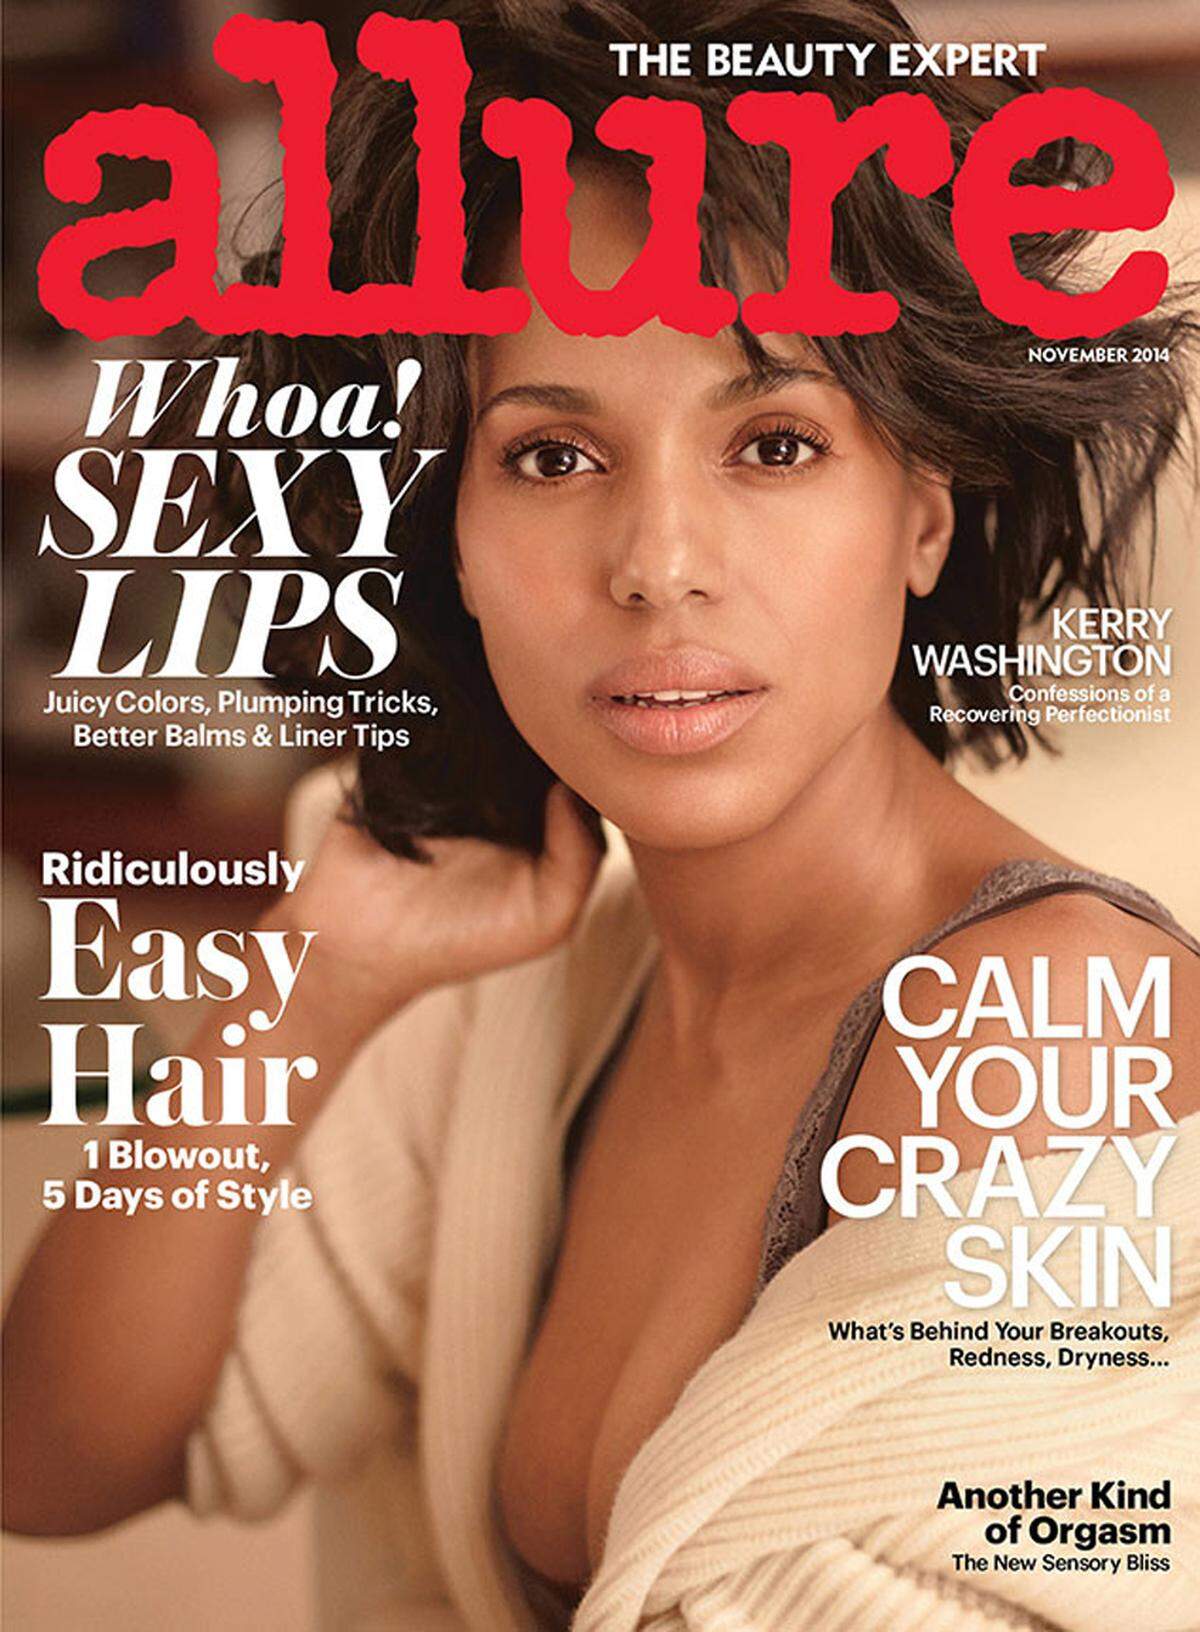 Auf Instagram haben sich schon einige Stars ohne Make-up gezeigt, Schauspielerin Kerry Washington macht es jetzt auf dem Cover des Allure Magazins. Etwas verschlafen wirkt die 37-jährige Schauspielerin, deren Bild auch nicht mit Photoshop nachbearbeitet wurde.